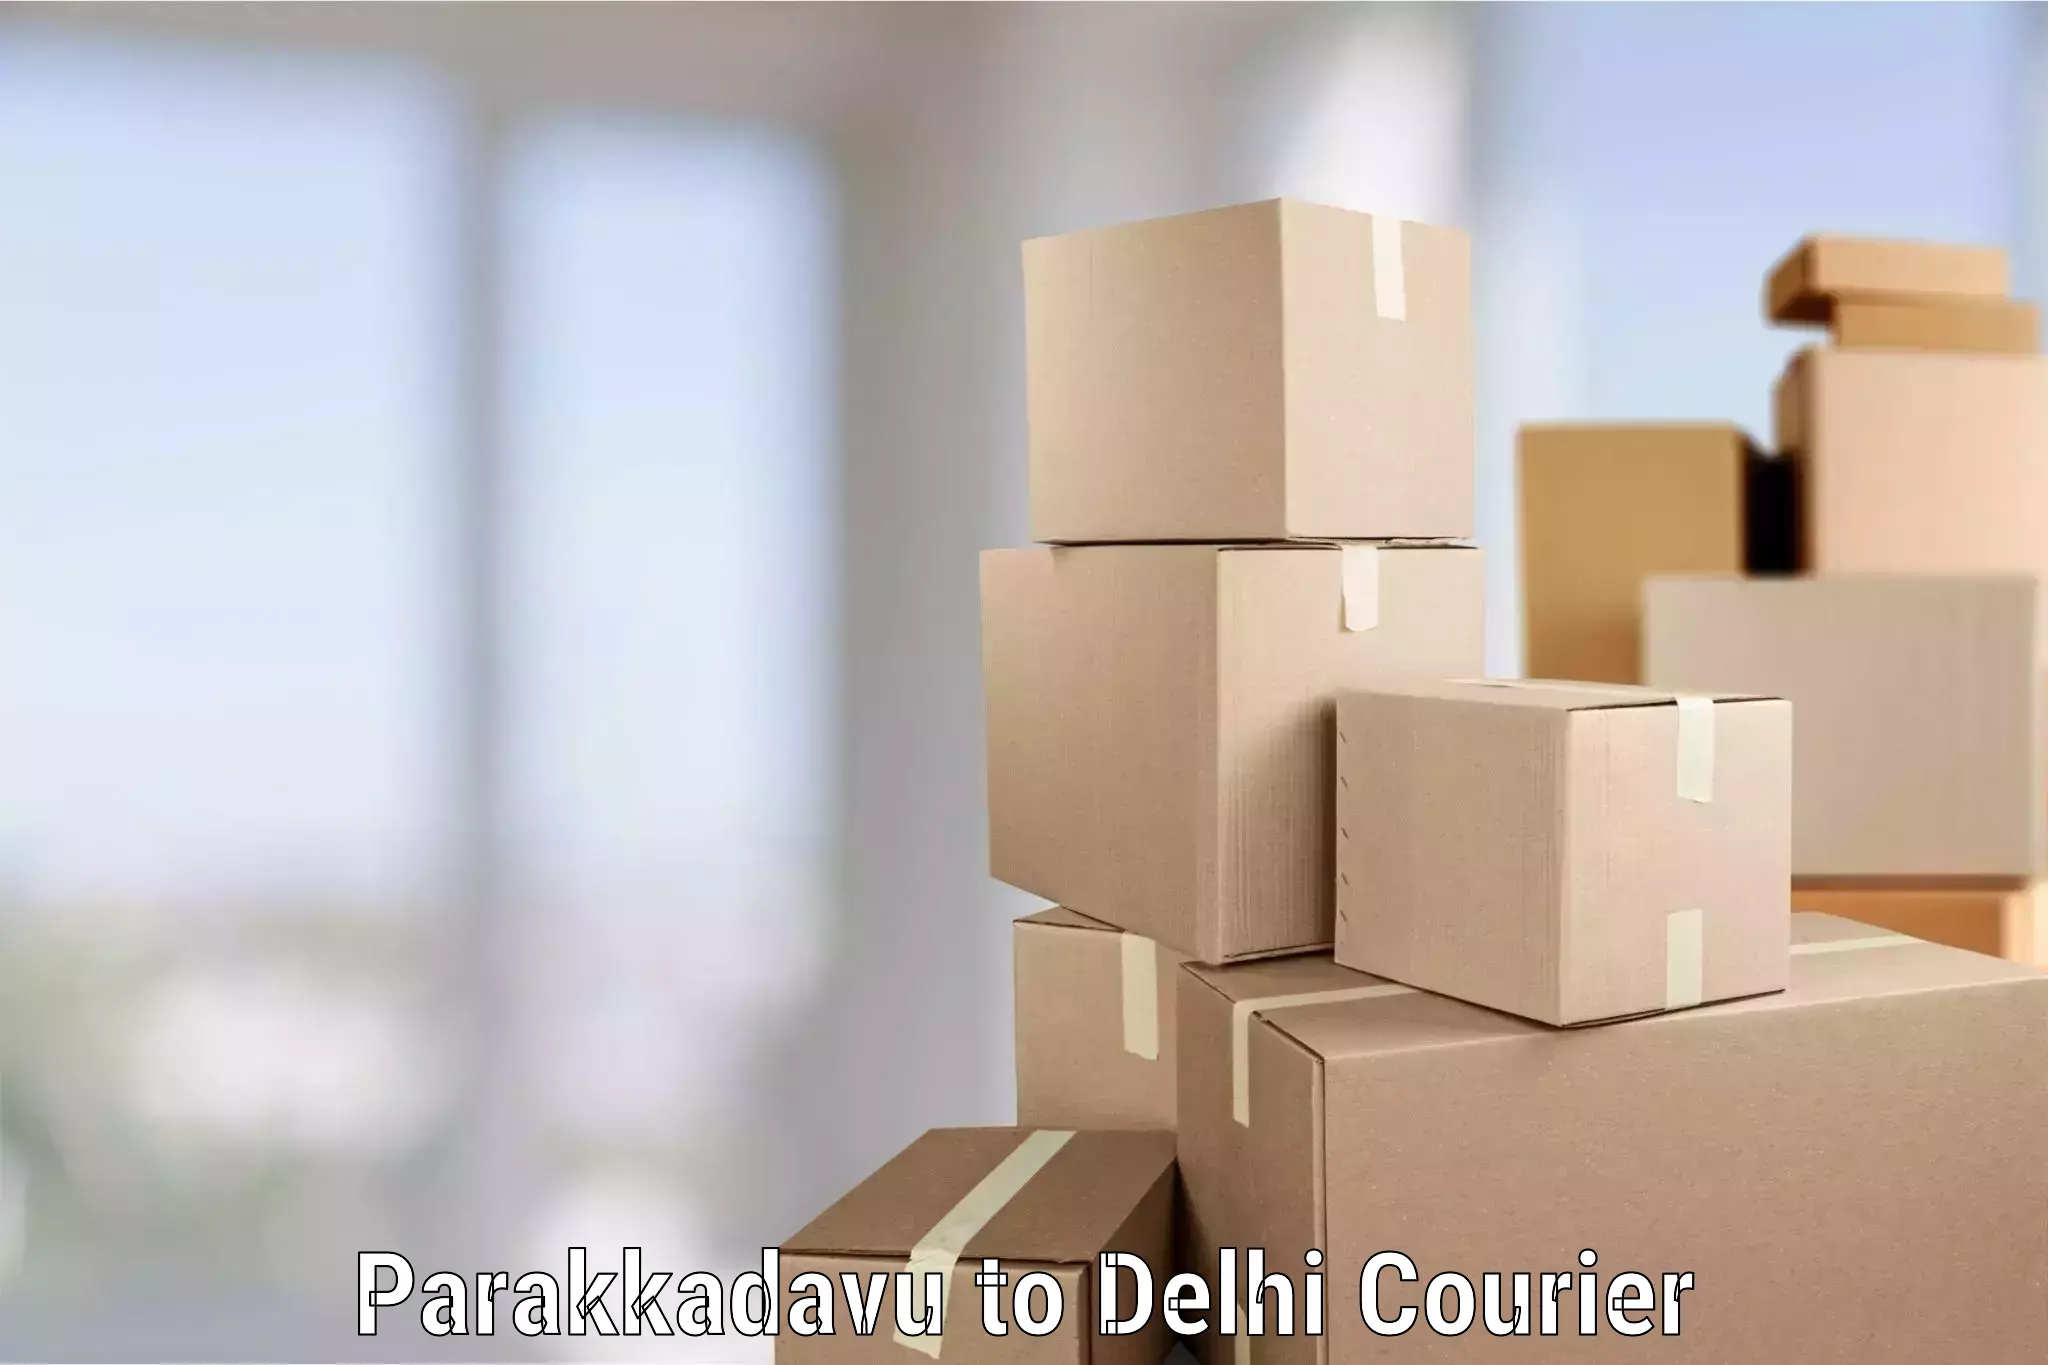 Local home movers Parakkadavu to Delhi